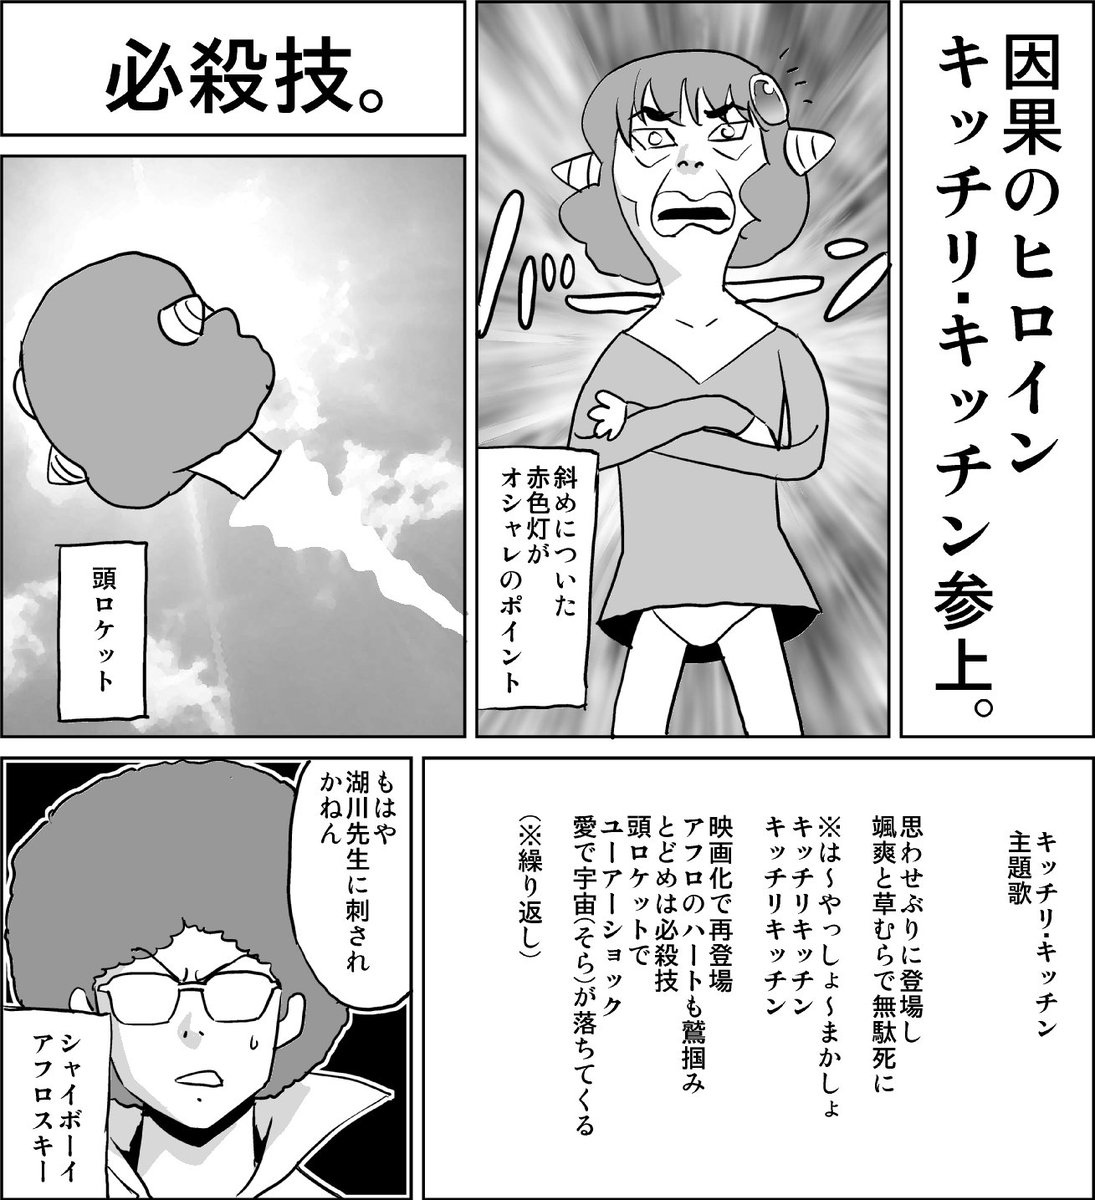 あべもりおか Abemorioka さんの漫画 141作目 ツイコミ 仮